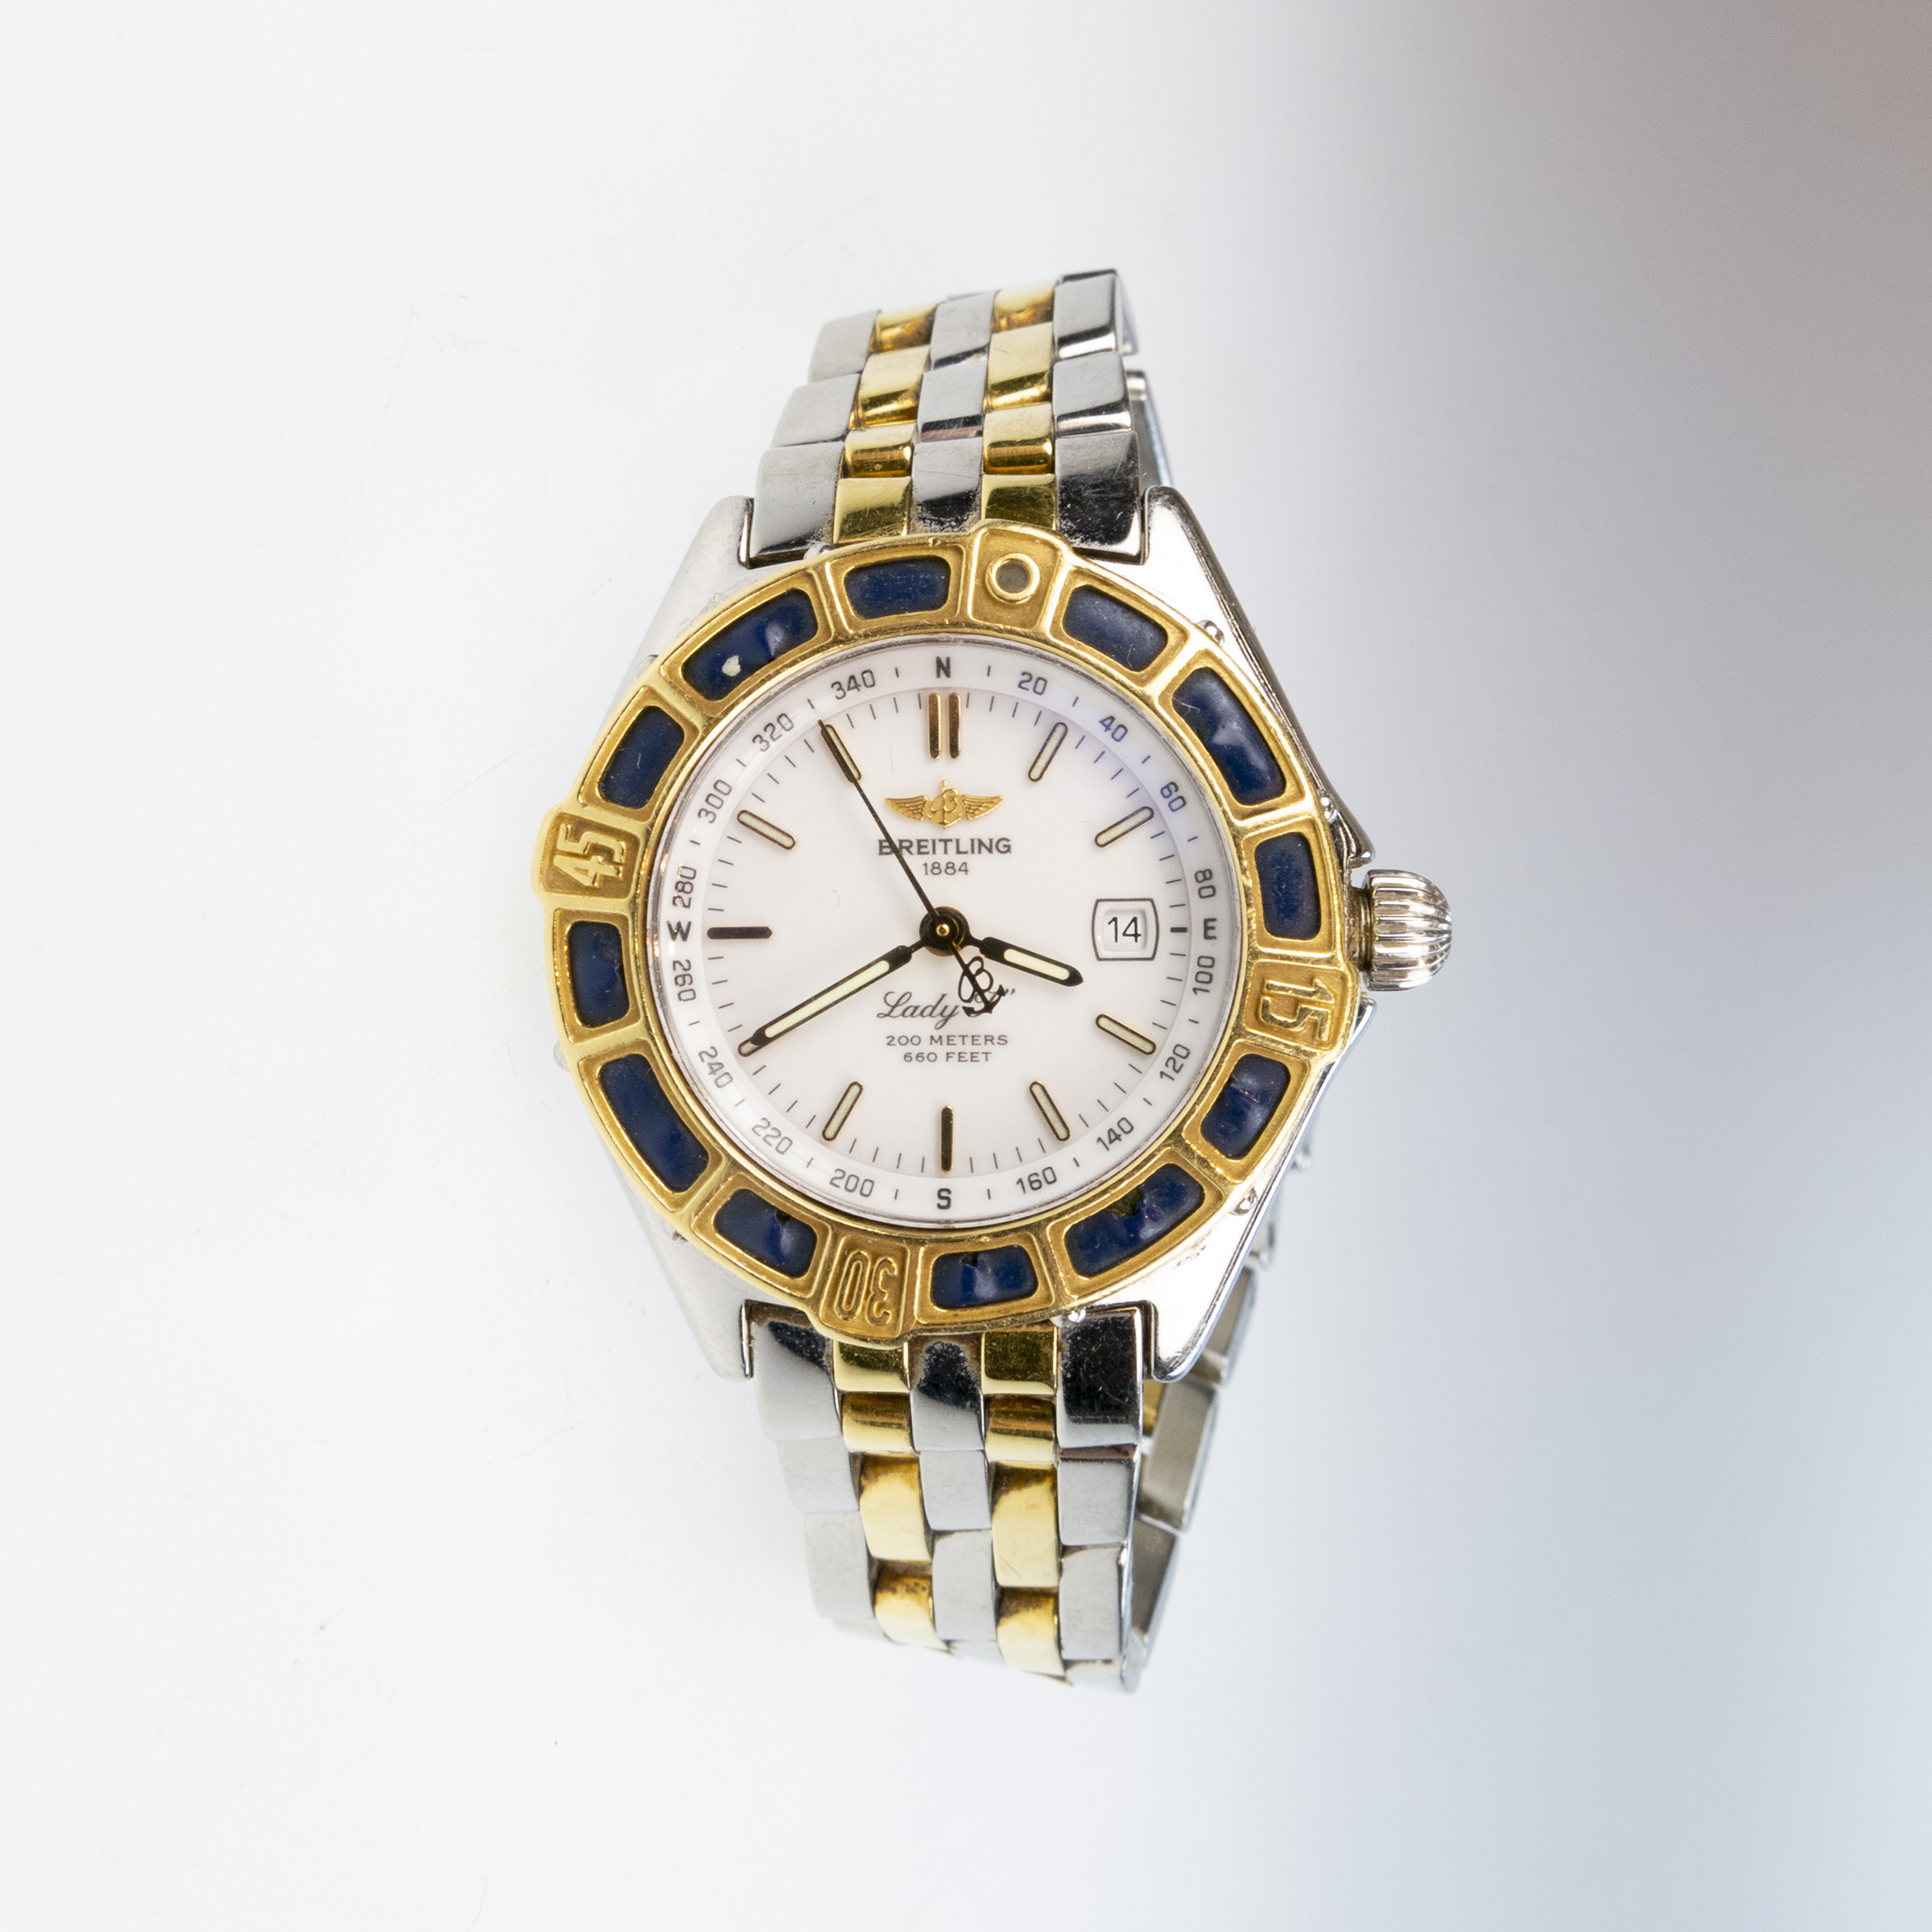 Lady's Breitling "Lady J" Wristwatch With Date